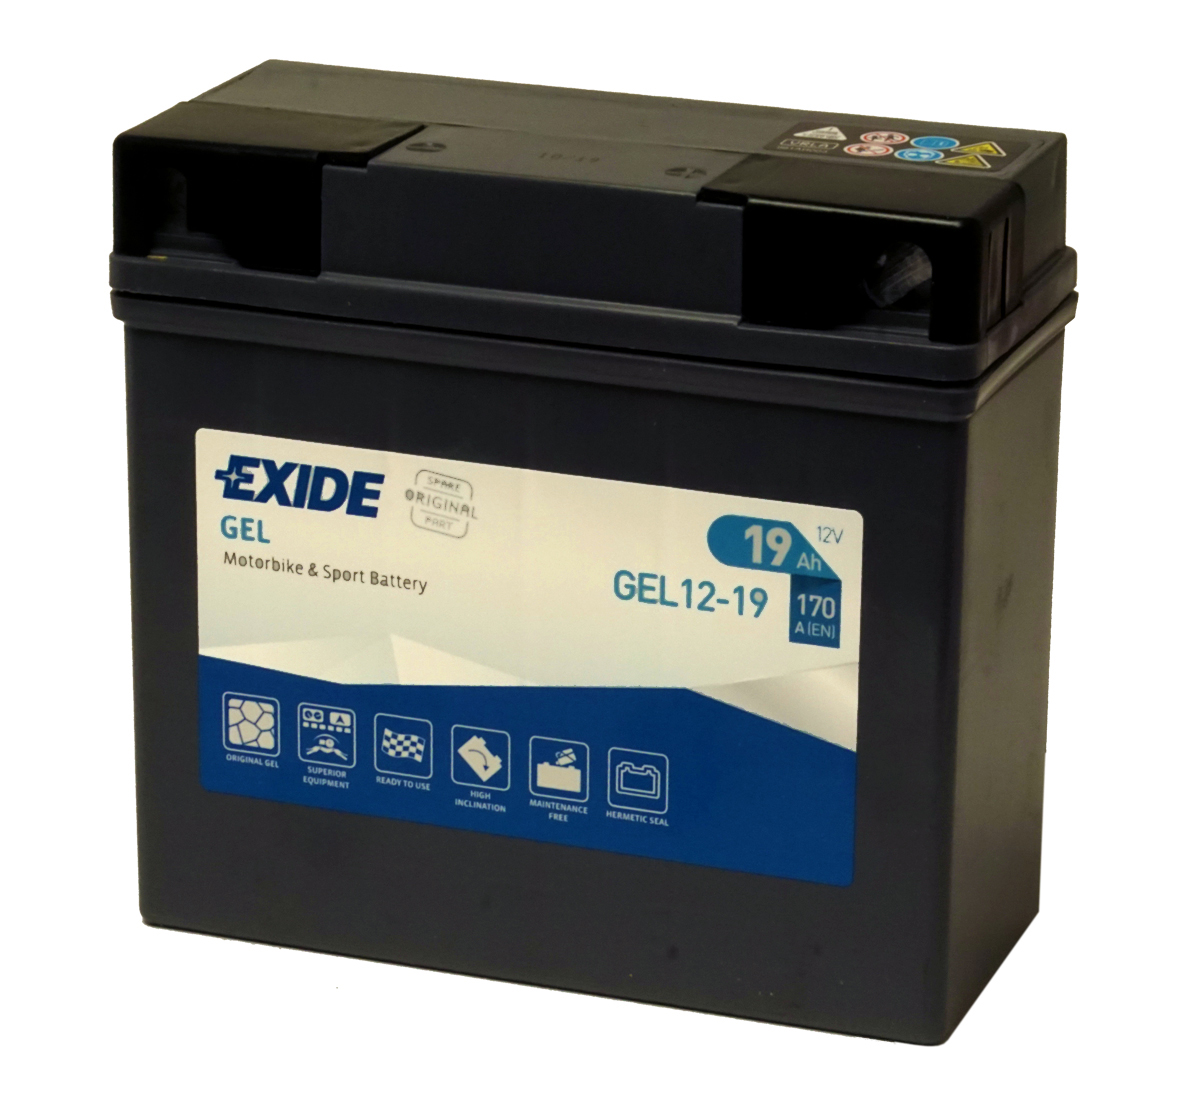 Exide EX12-19 Gel BMW Motorcyle Battery